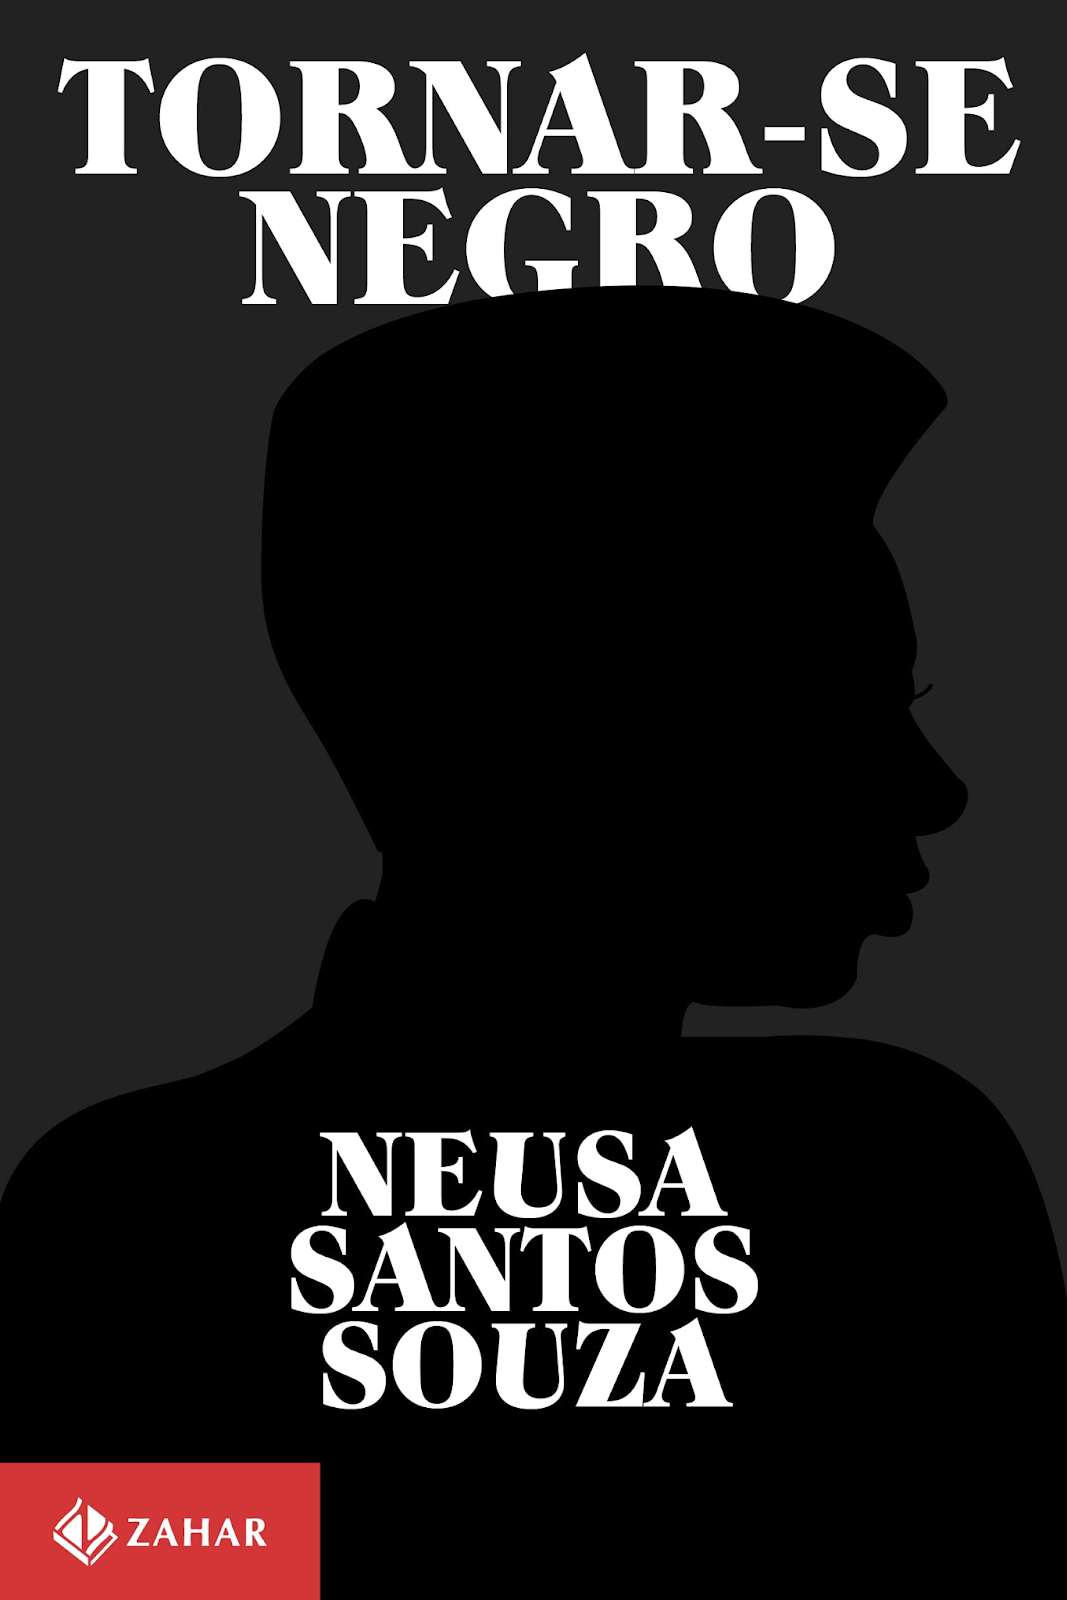 Capa do livro Tornar-se Negro, de Neusa Santos Souza. O título e o nome da autora estão em letras brancas, e há a silhueta em preto de uma pessoa ao fundo.